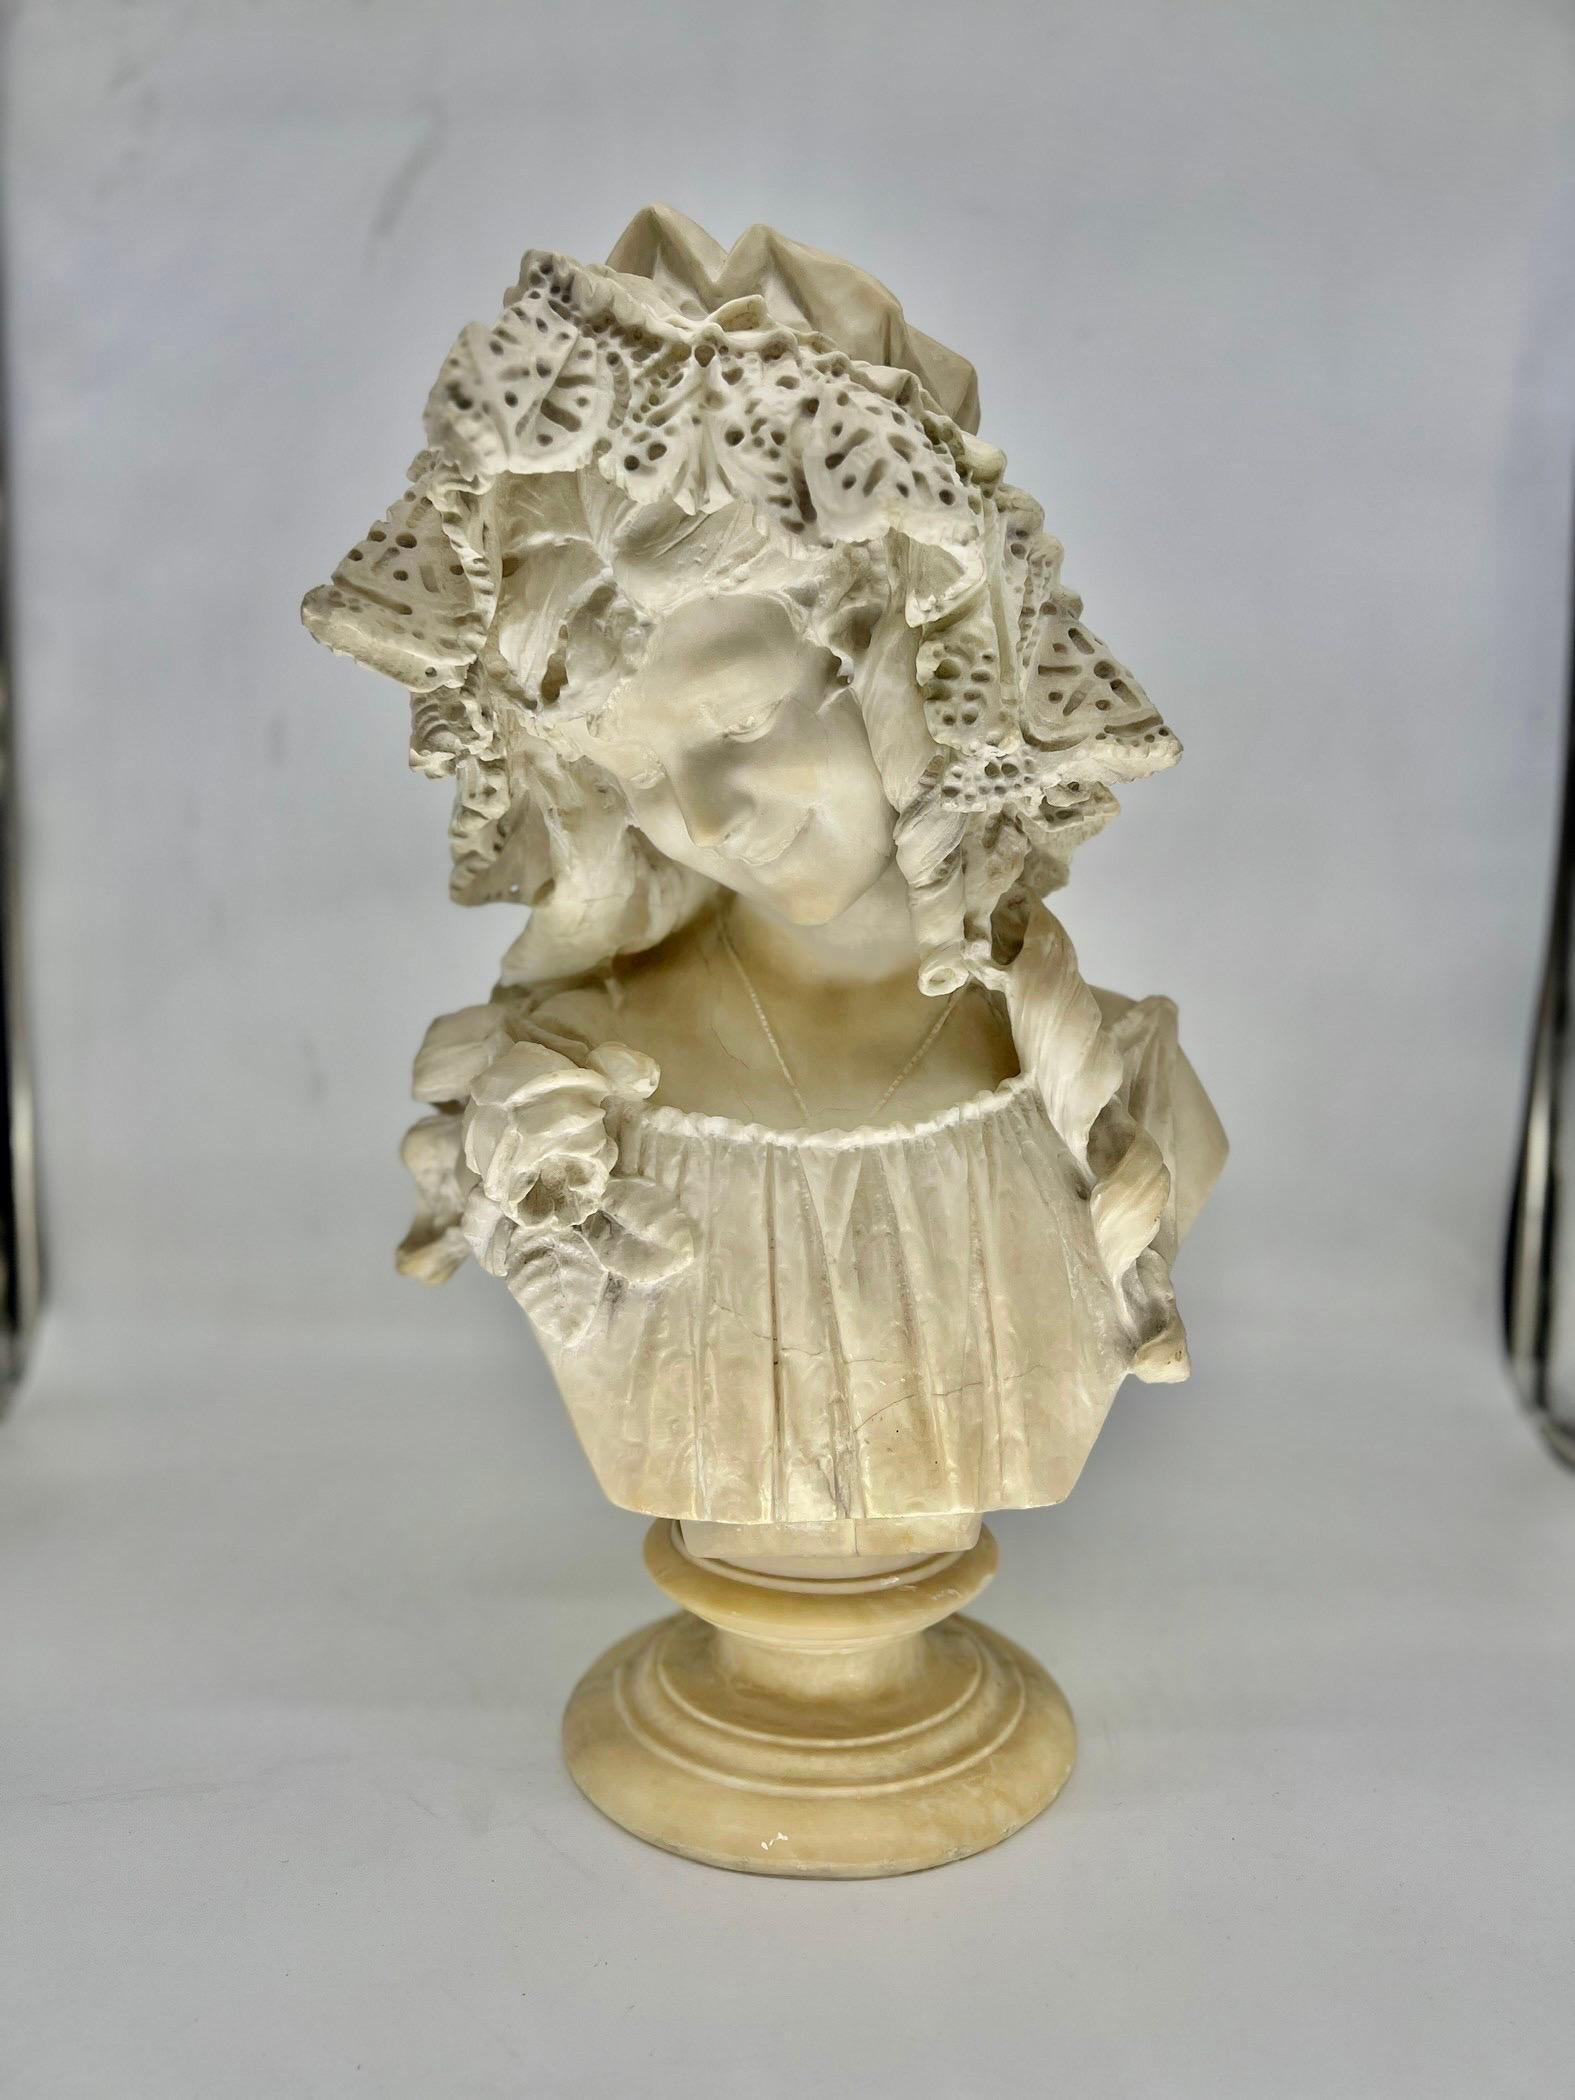 Buste en albâtre italien sculpté d'une jeune femme Circa 1895.

Buste en albâtre sculpté d'une jeune fille portant un bonnet de dentelle à volants et une décoration finement sculptée sur le buste. Signé au verso.

Note : La statue est en deux